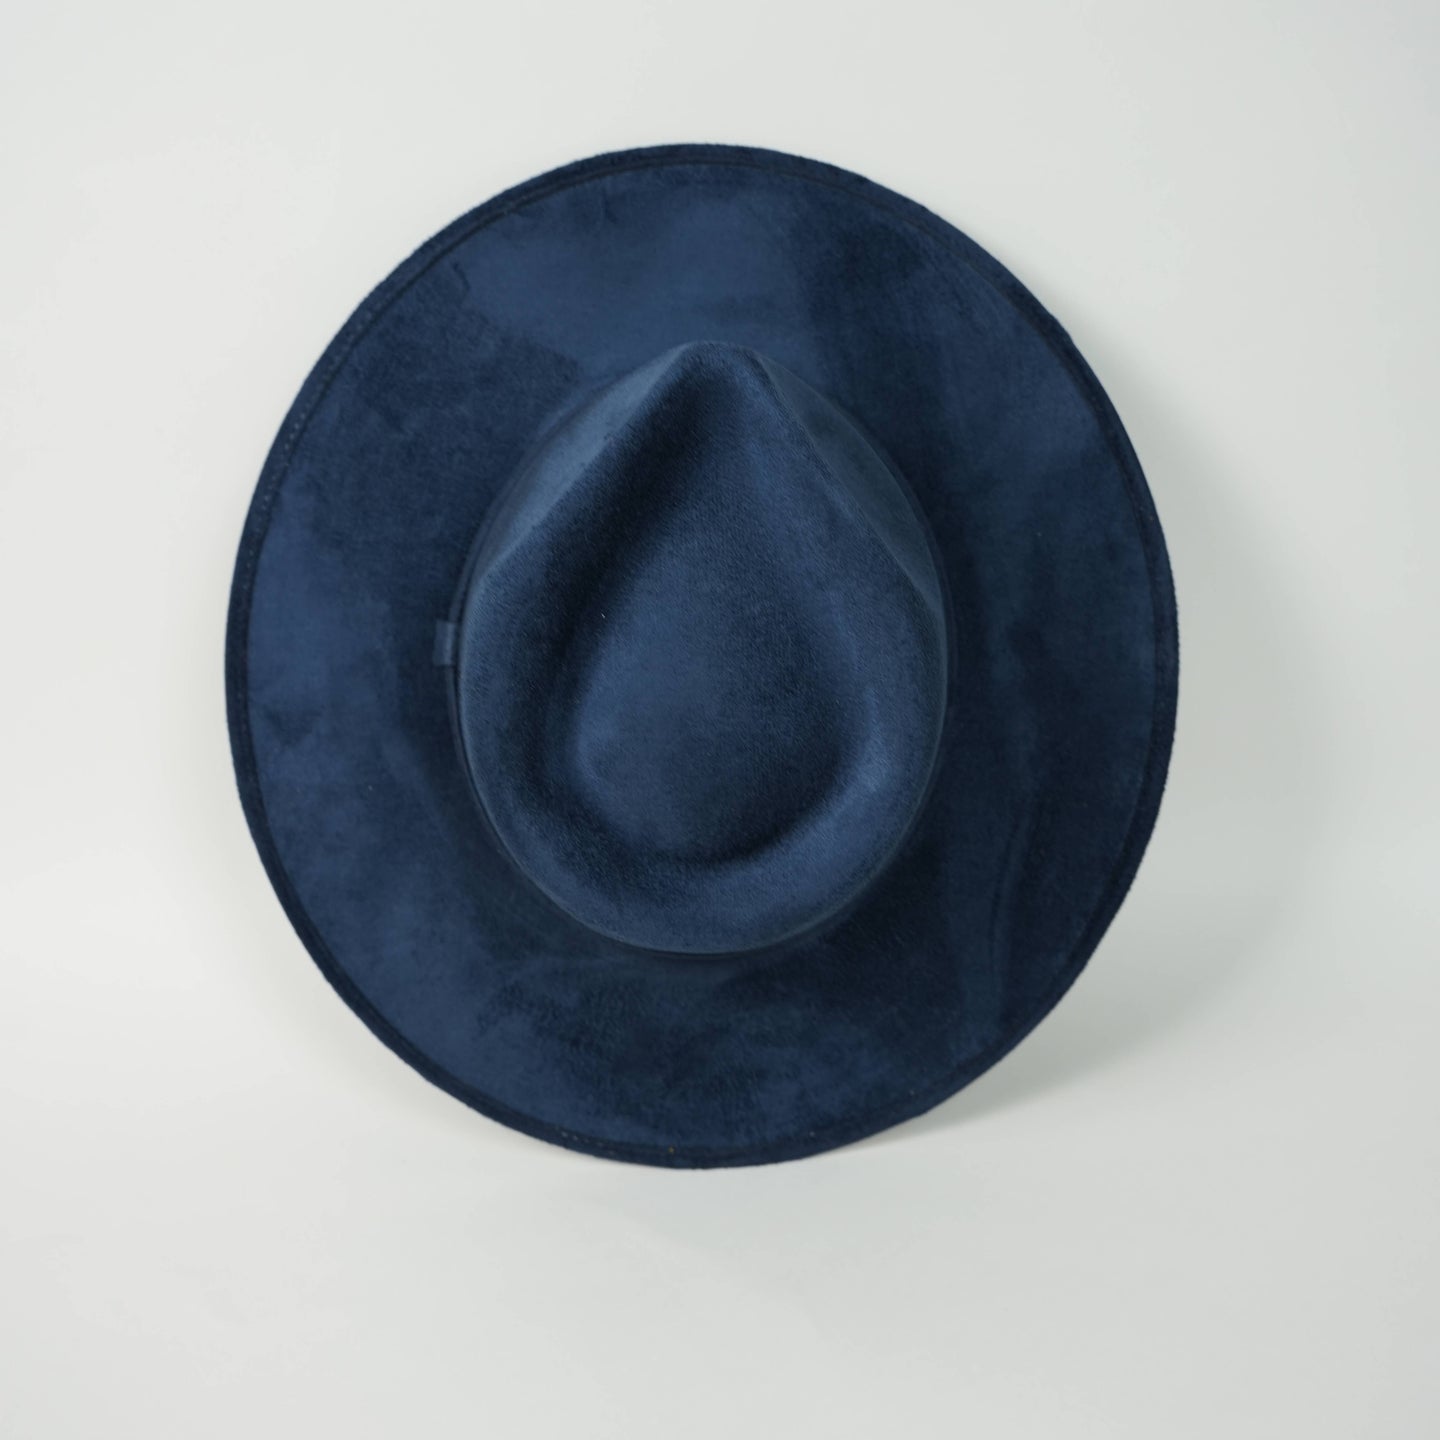 Vegan Suede Rancher Hat - Navy Blue